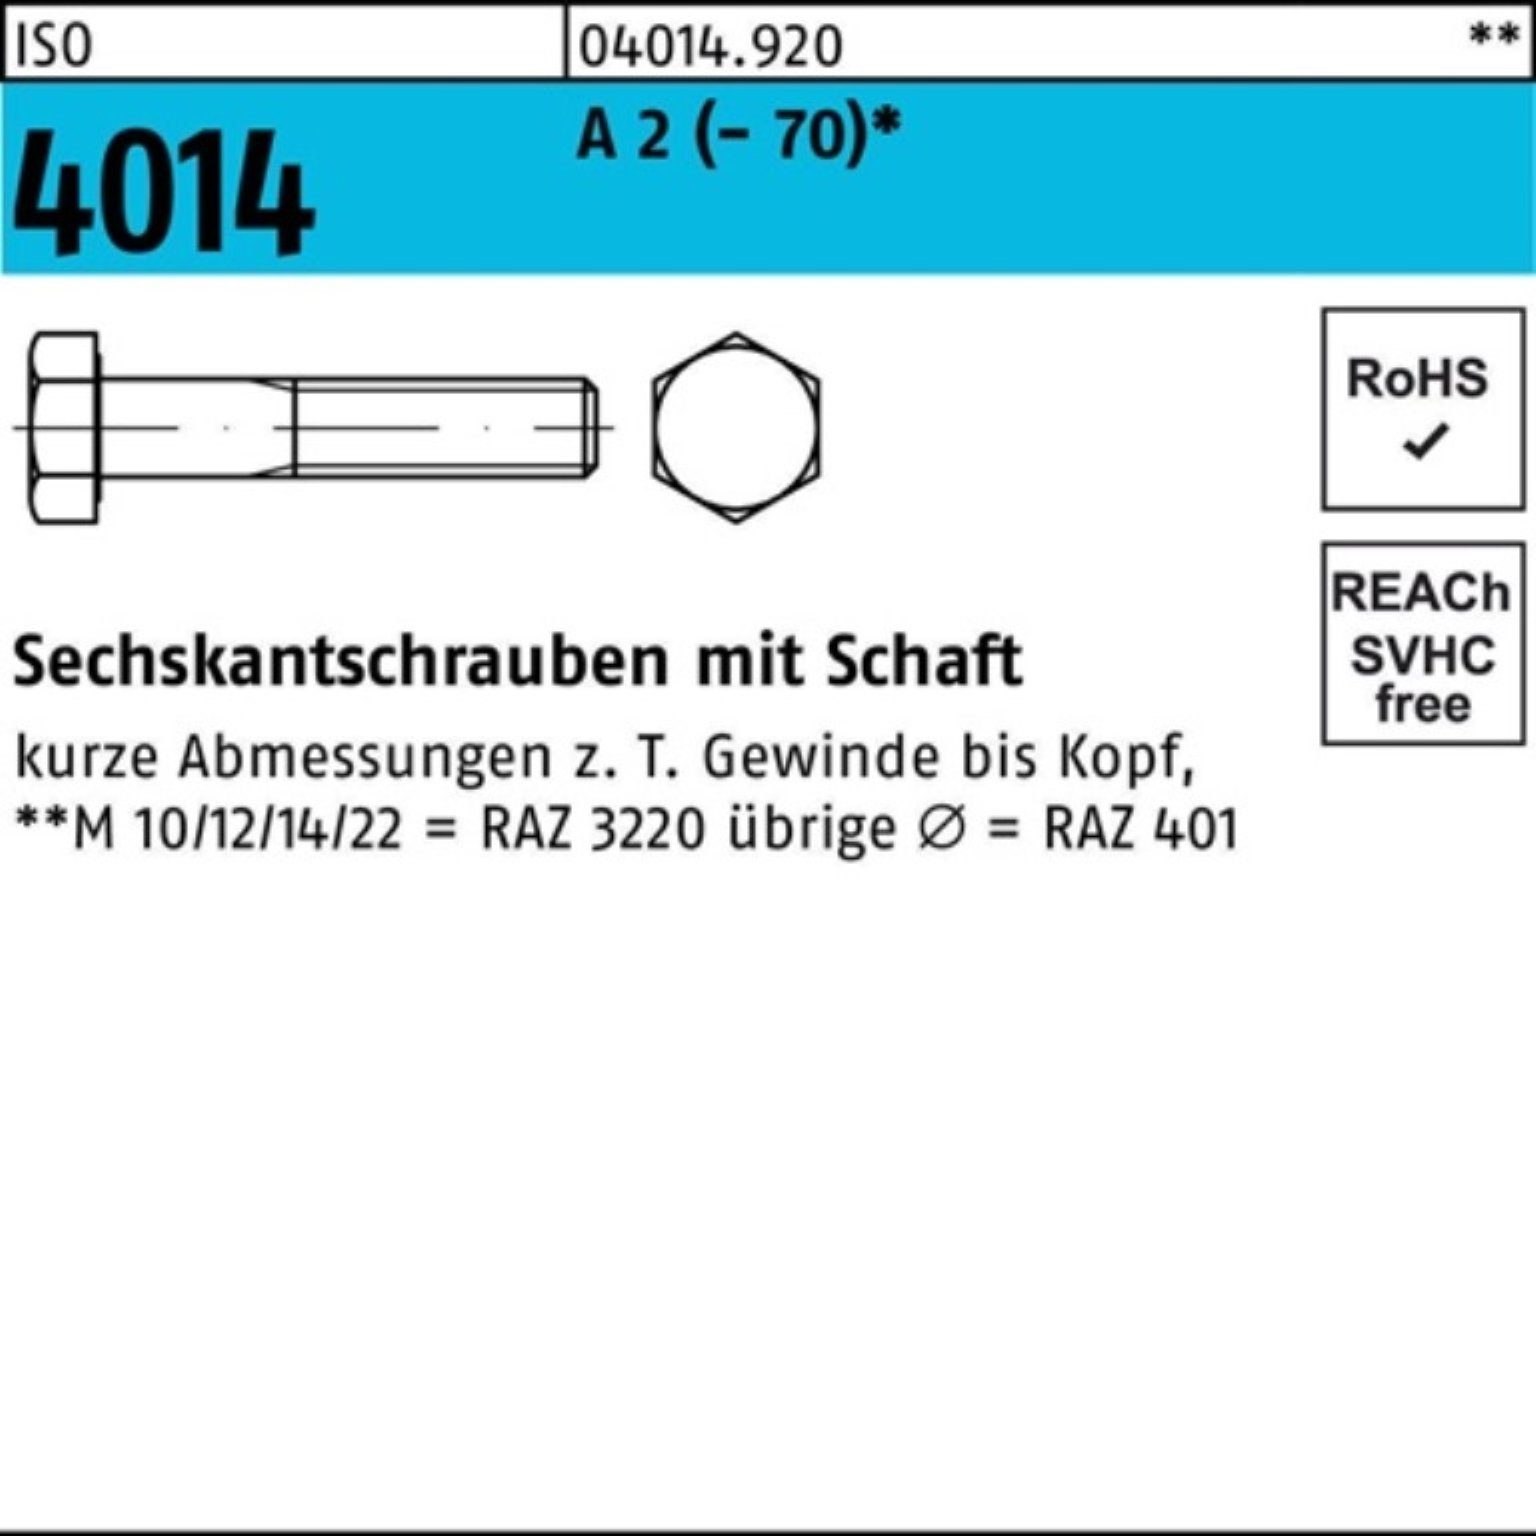 Bufab Sechskantschraube 100er Pack Sechskantschraube ISO 4014 Schaft M22x 180 A 2 (70) 1 St